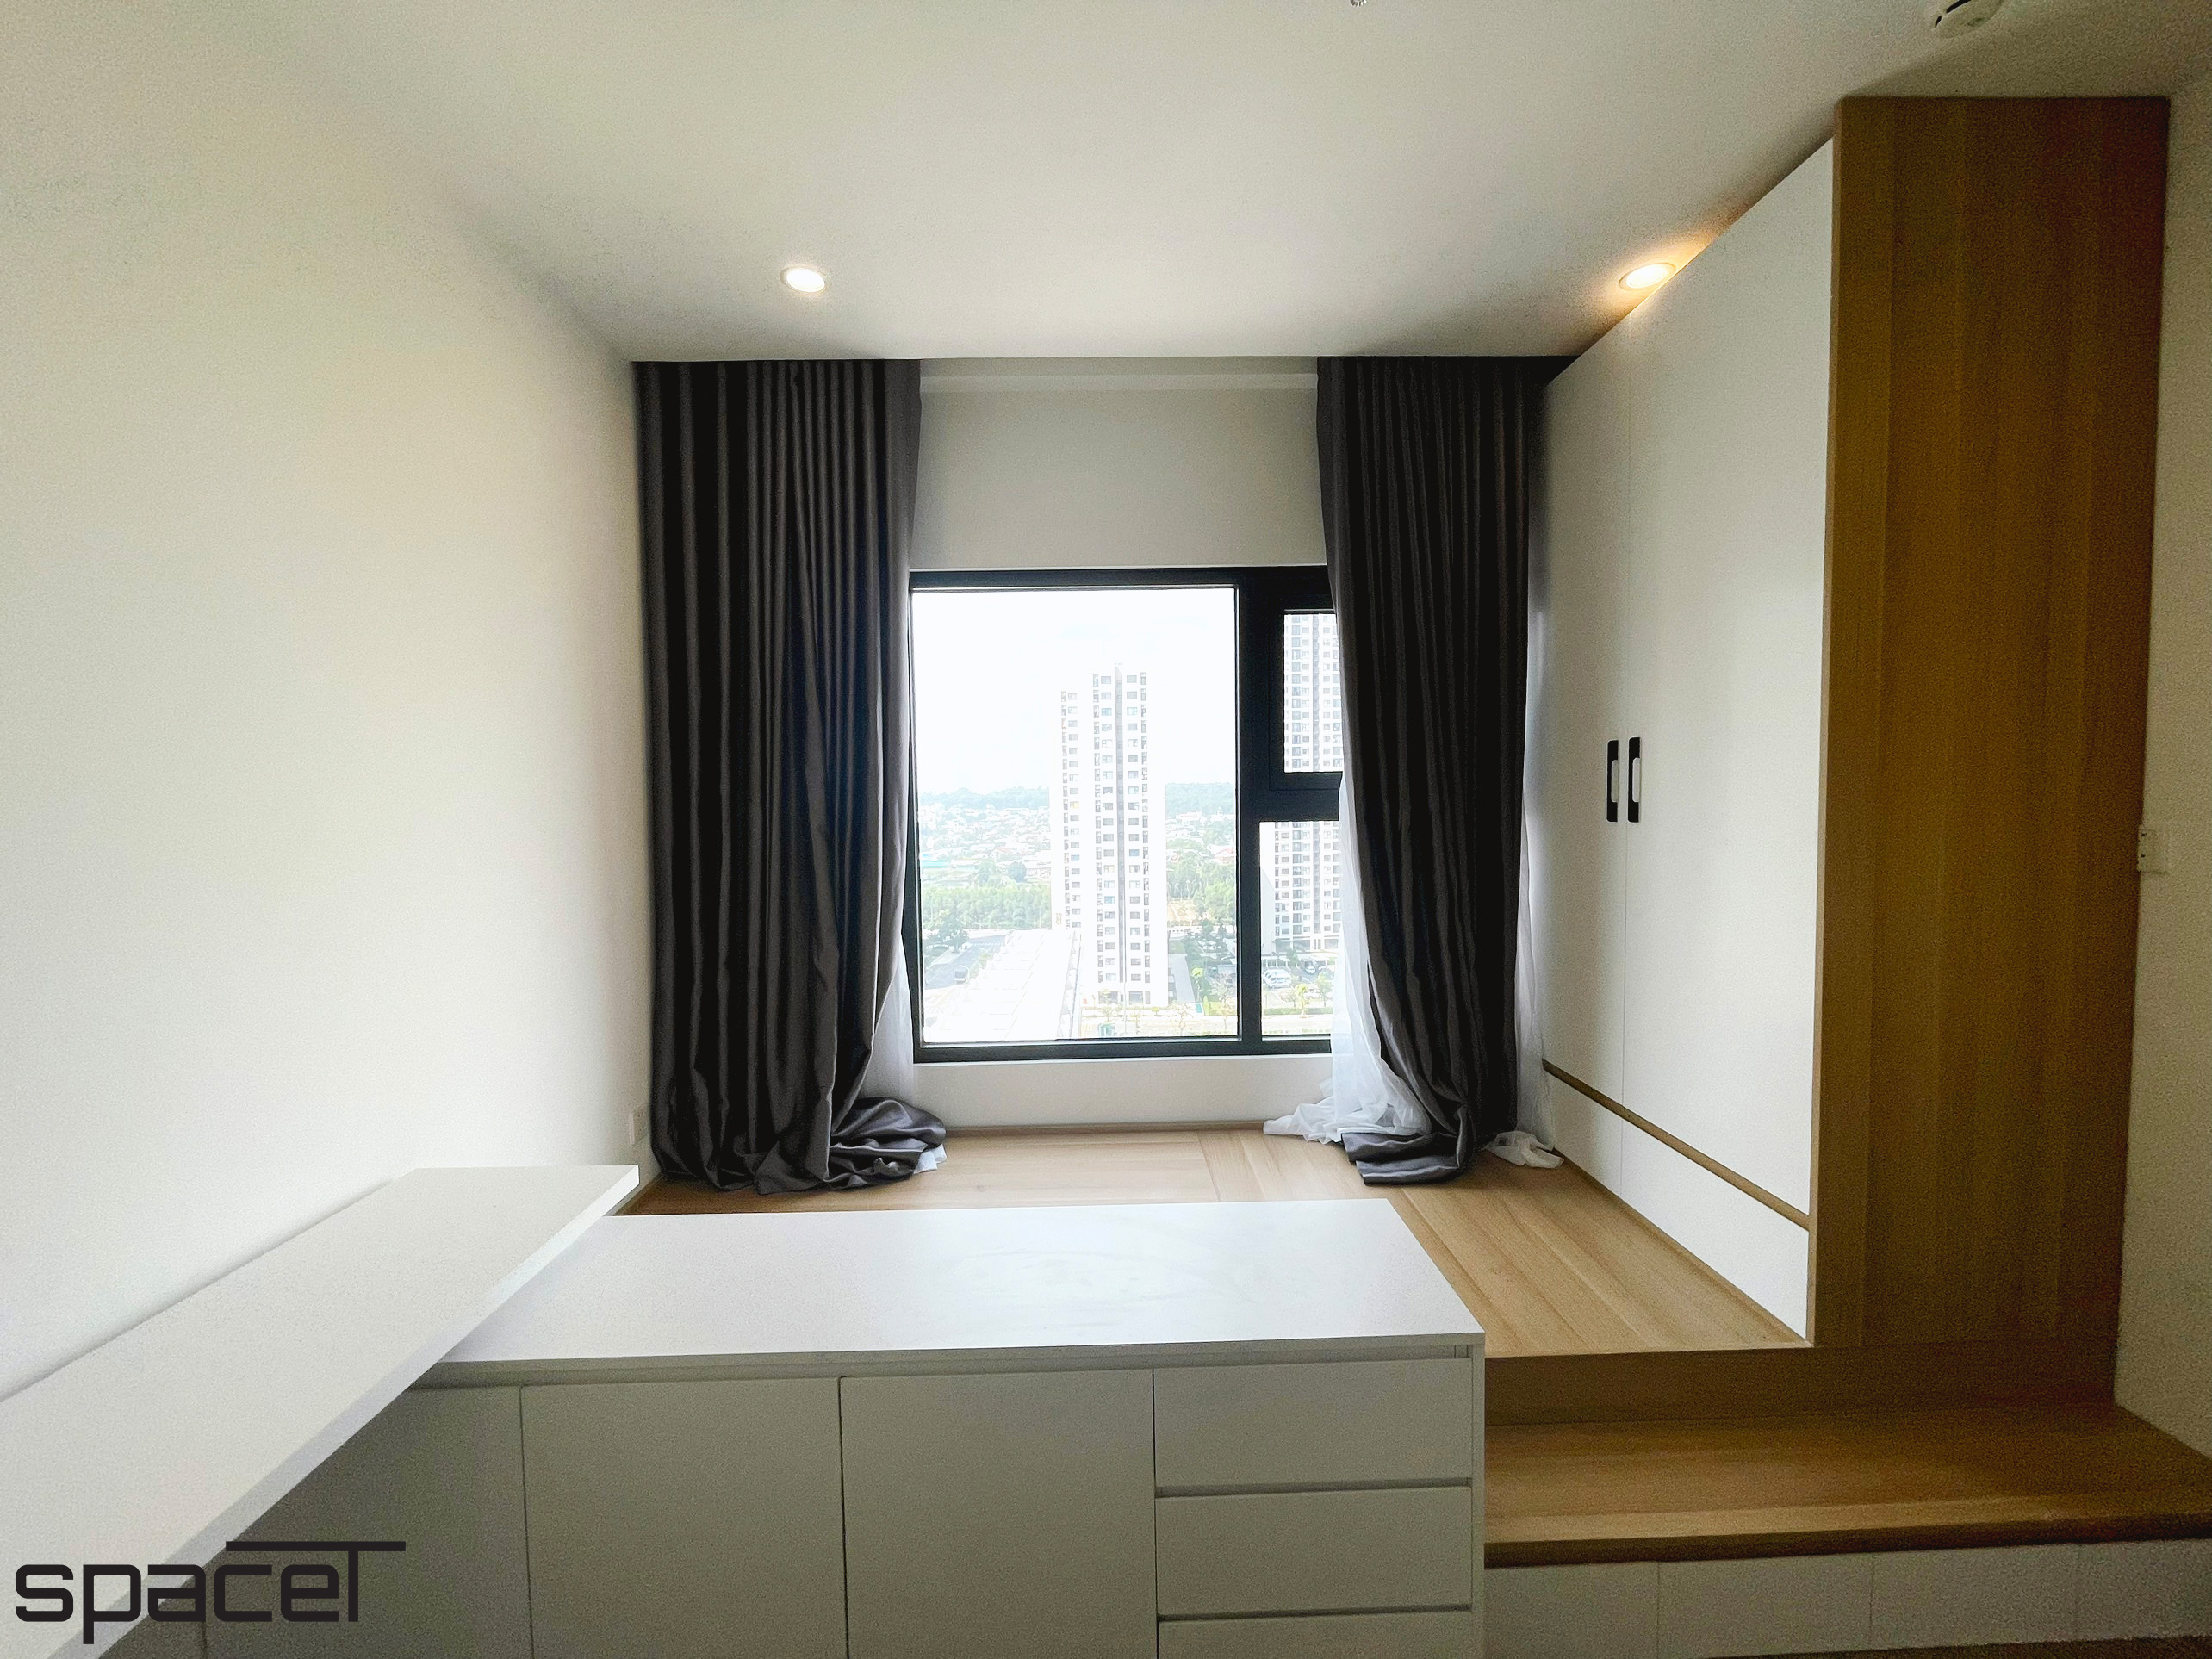 Phòng ngủ, phong cách Bắc Âu Scandinavian, hoàn thiện nội thất, căn hộ The Origami Vinhomes Quận 9